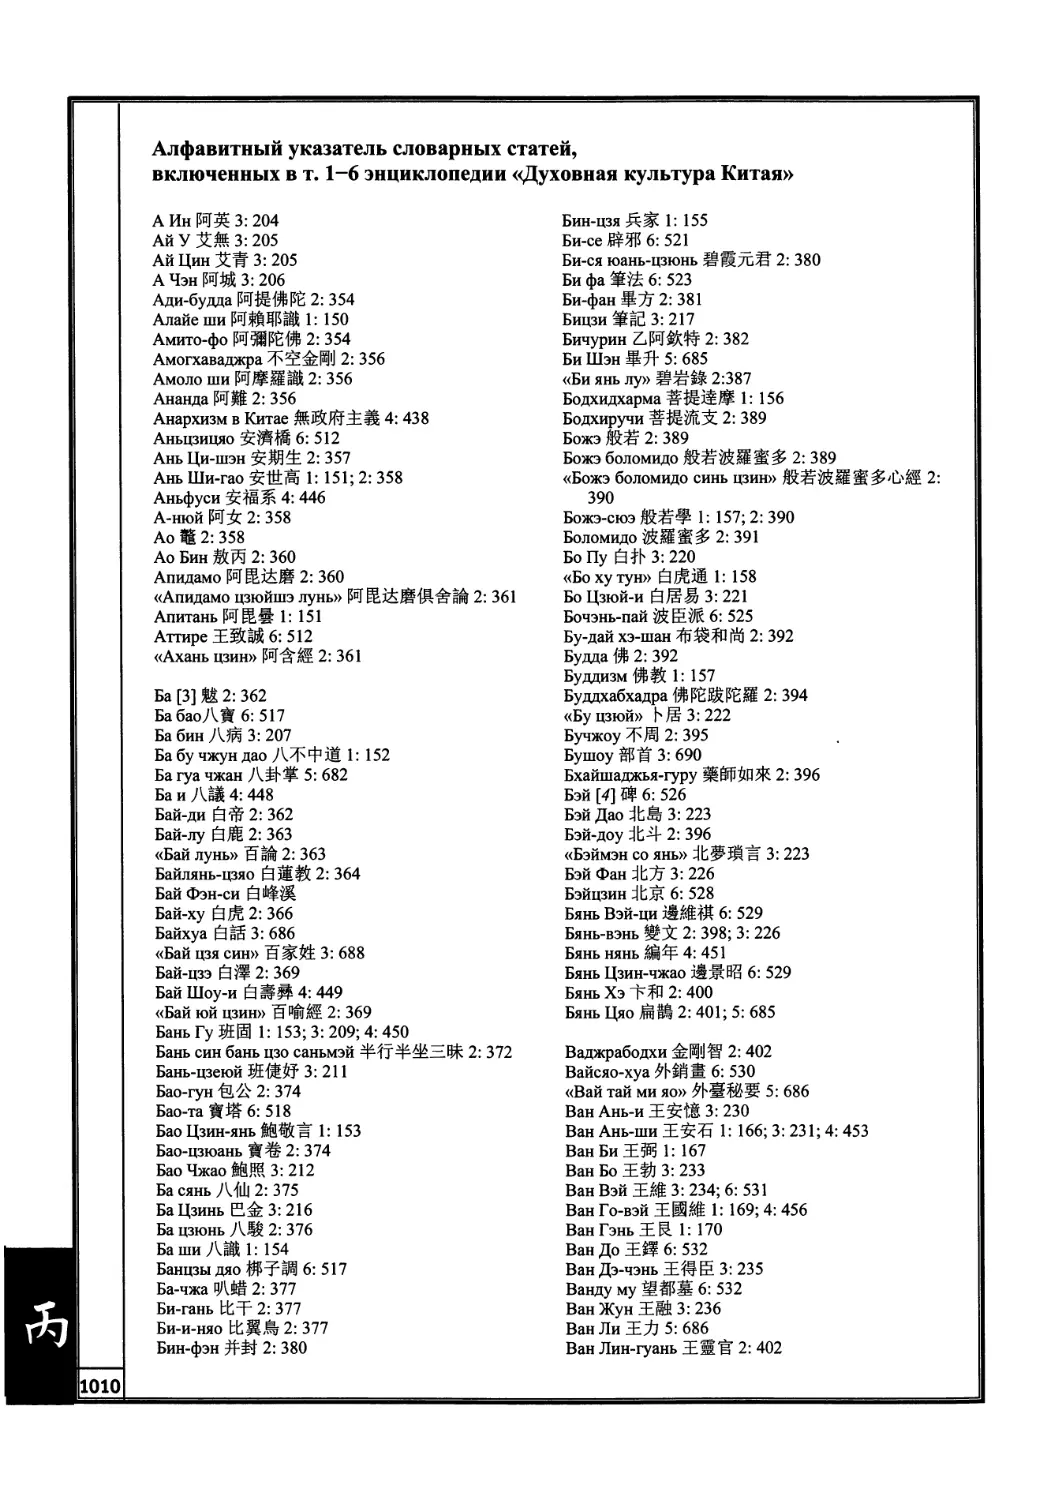 Алфавитный указатель словарных статей, включенных в т. 1-6 энциклопедии «Духовная культура Китая»